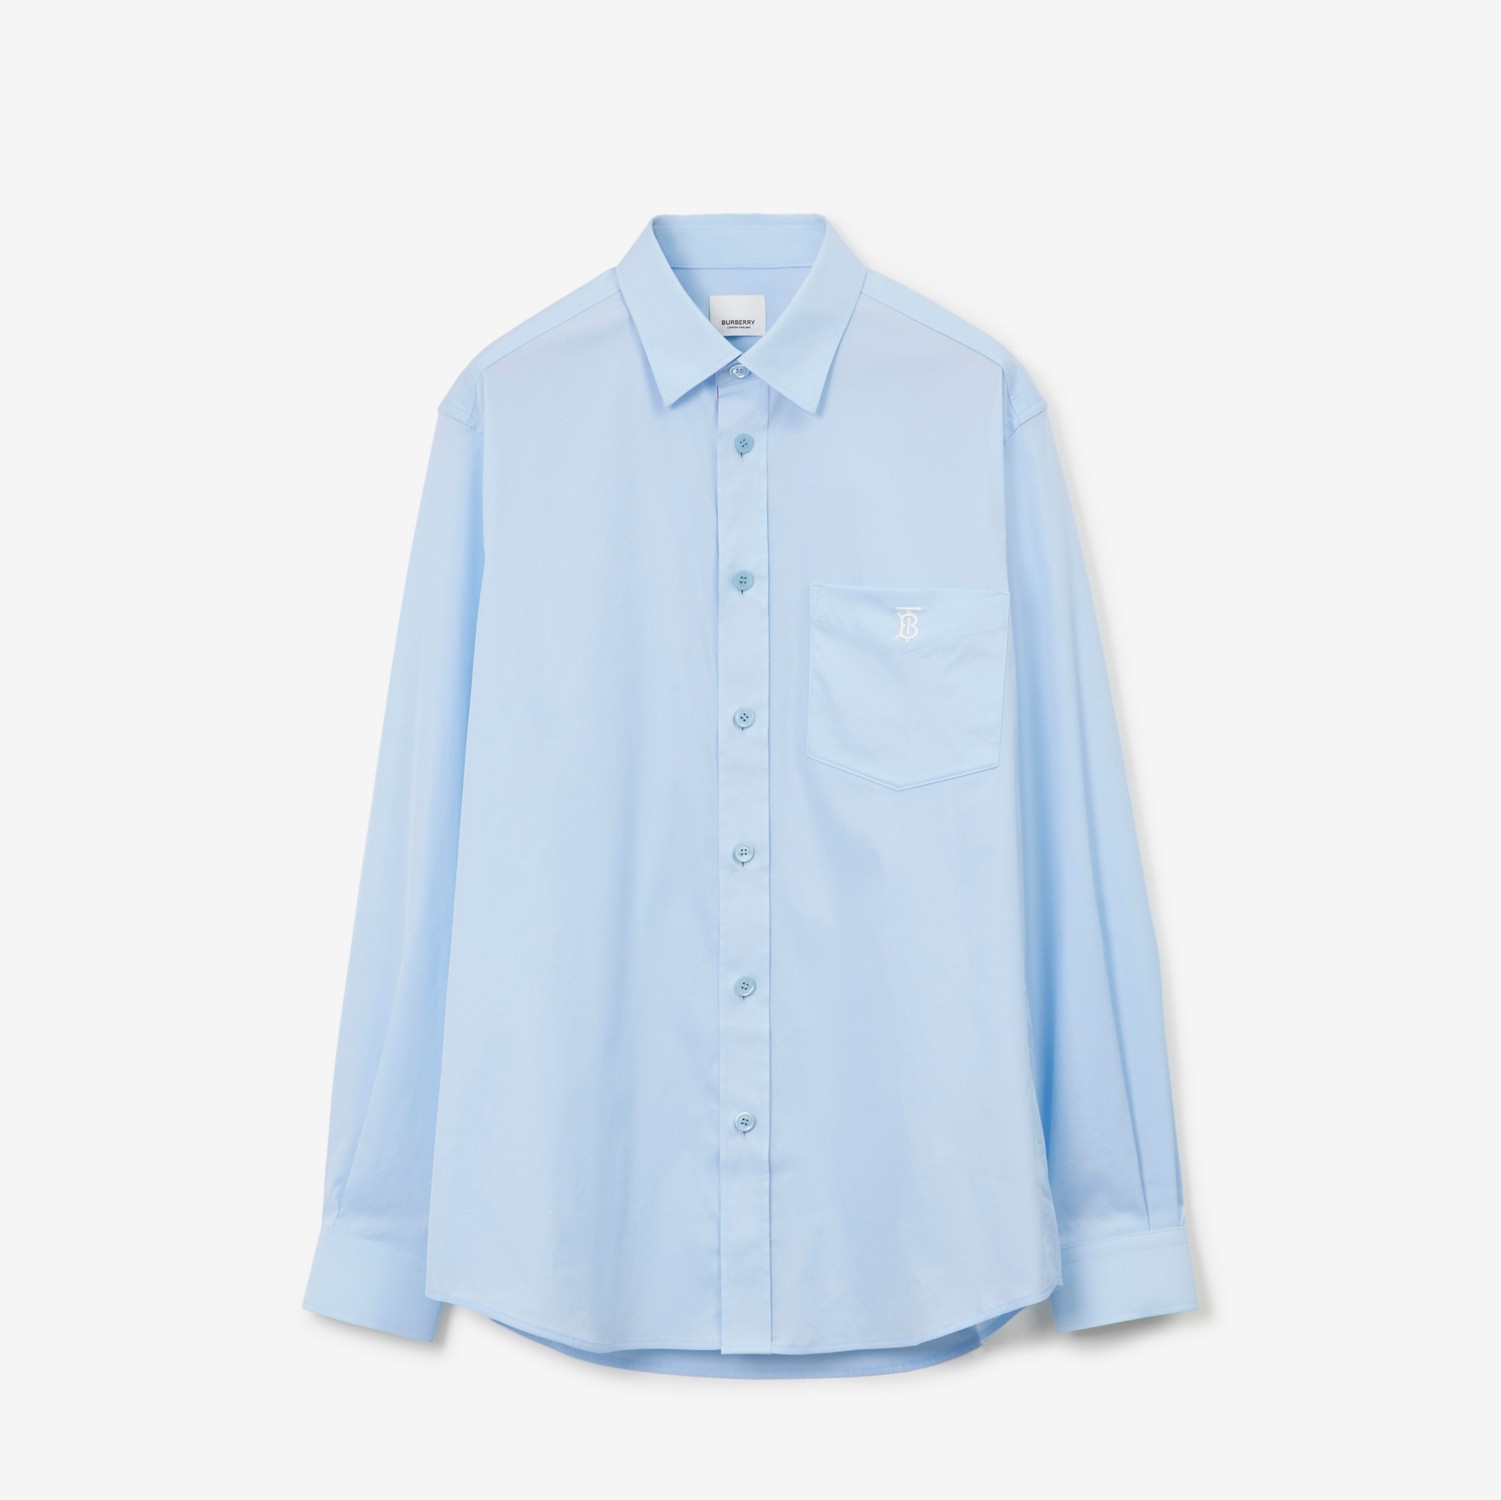 专属标识设计弹力棉质混纺衬衫 (浅蓝色) - 男士 | Burberry® 博柏利官网